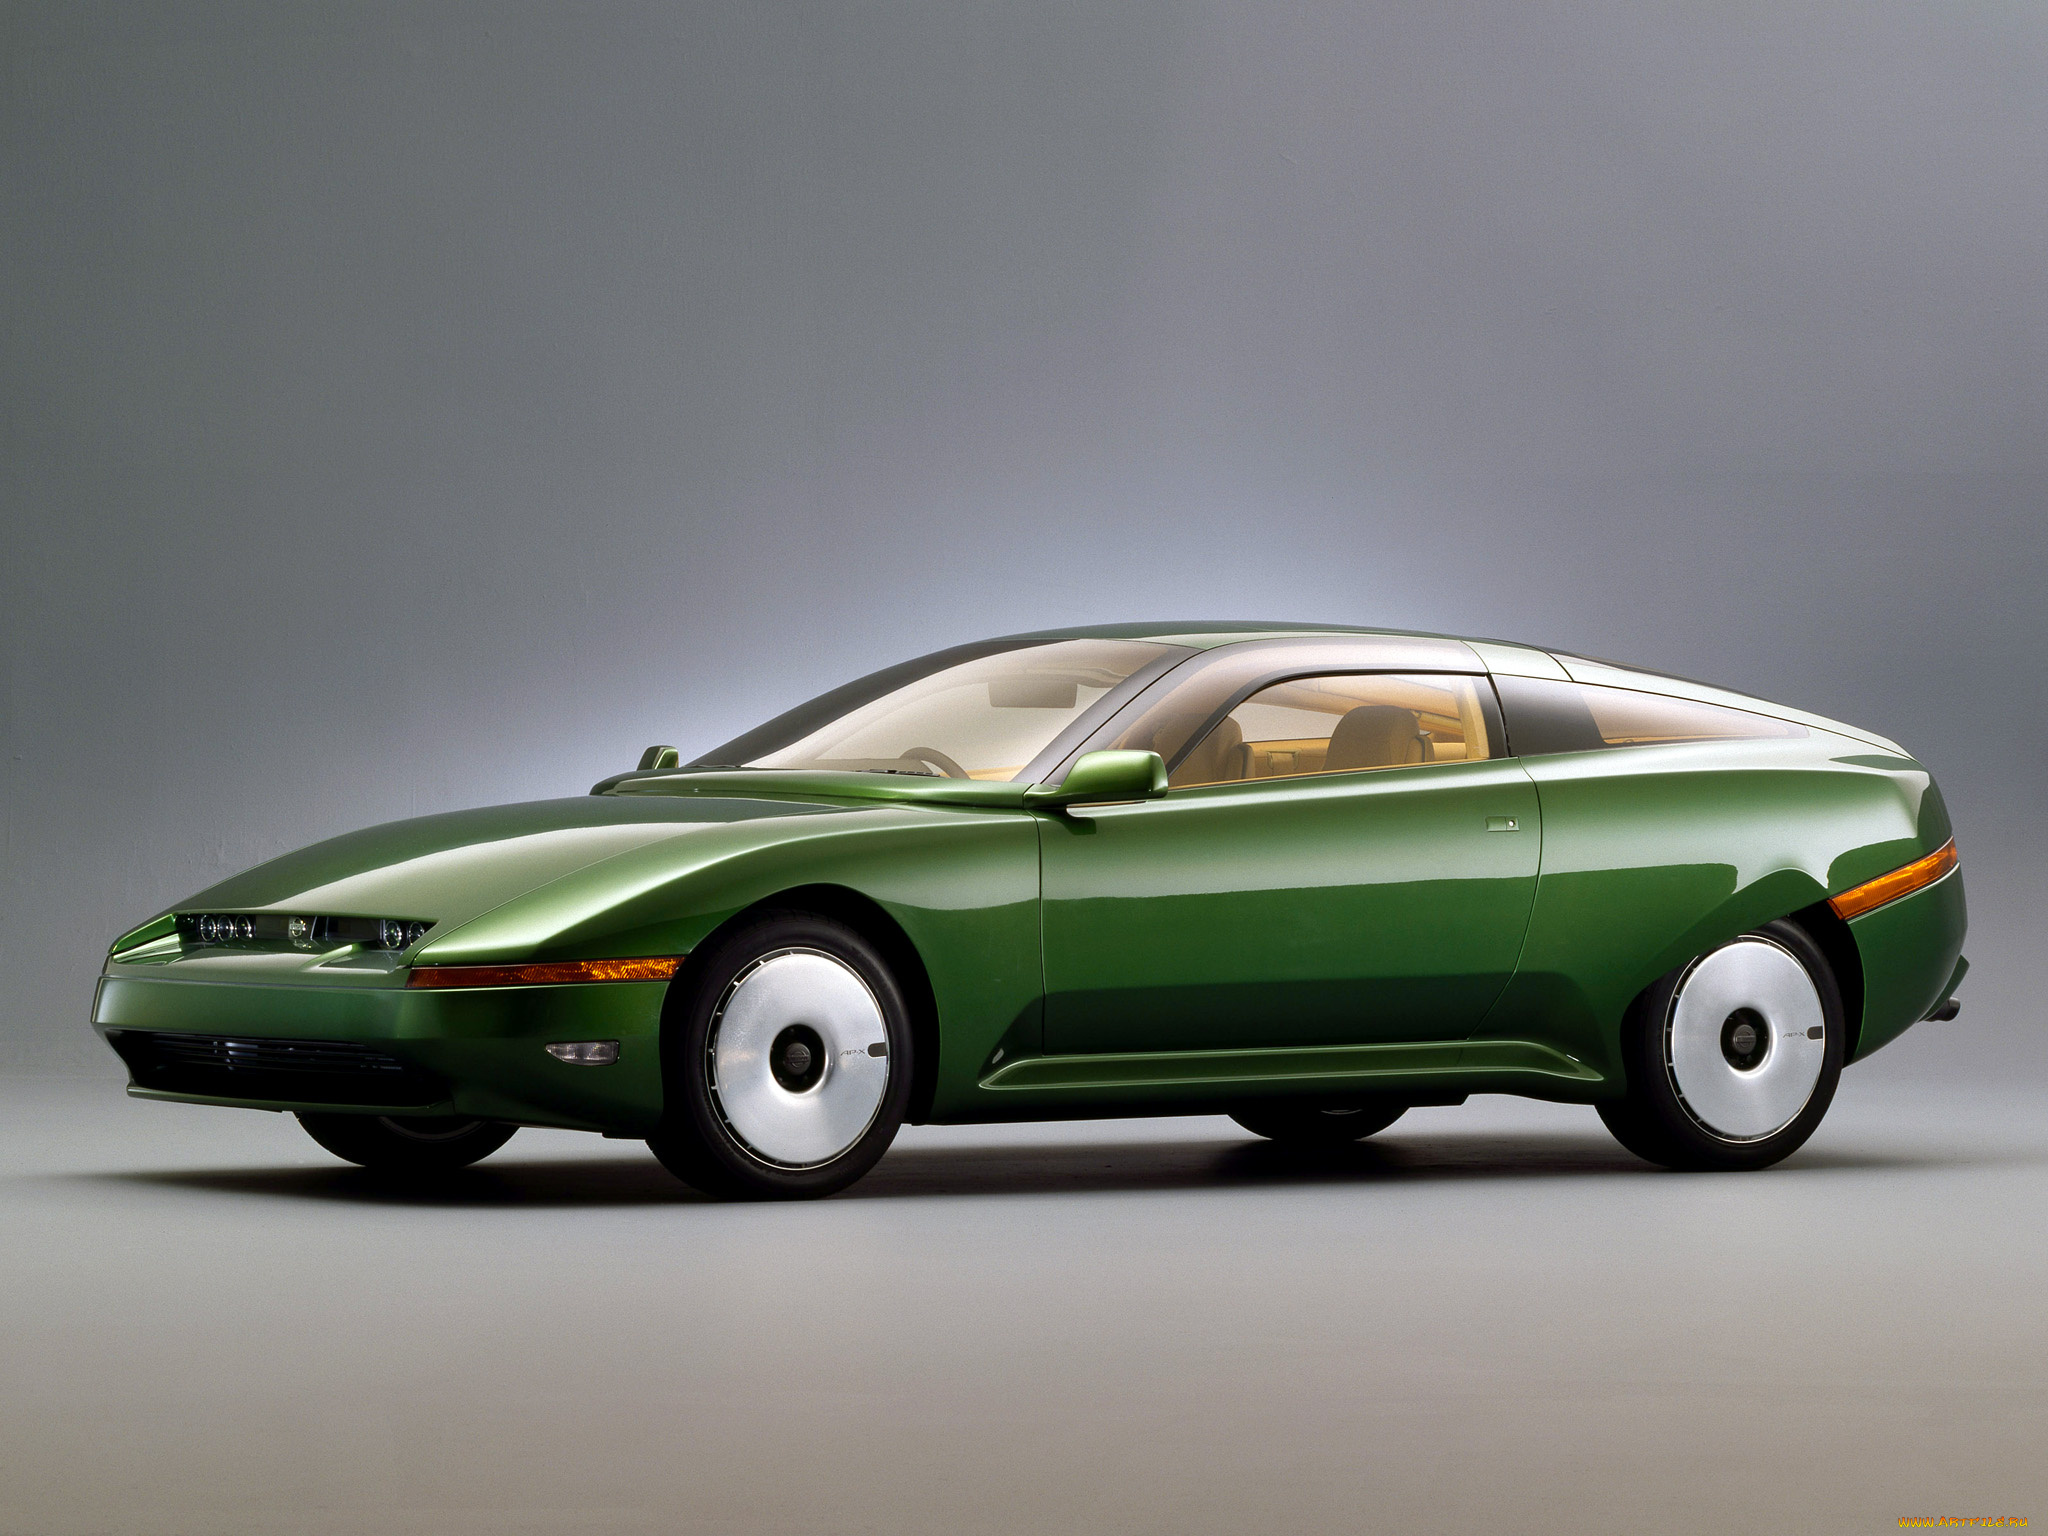 автомобили, nissan, datsun, ap-x, concept, 1993г, зеленый